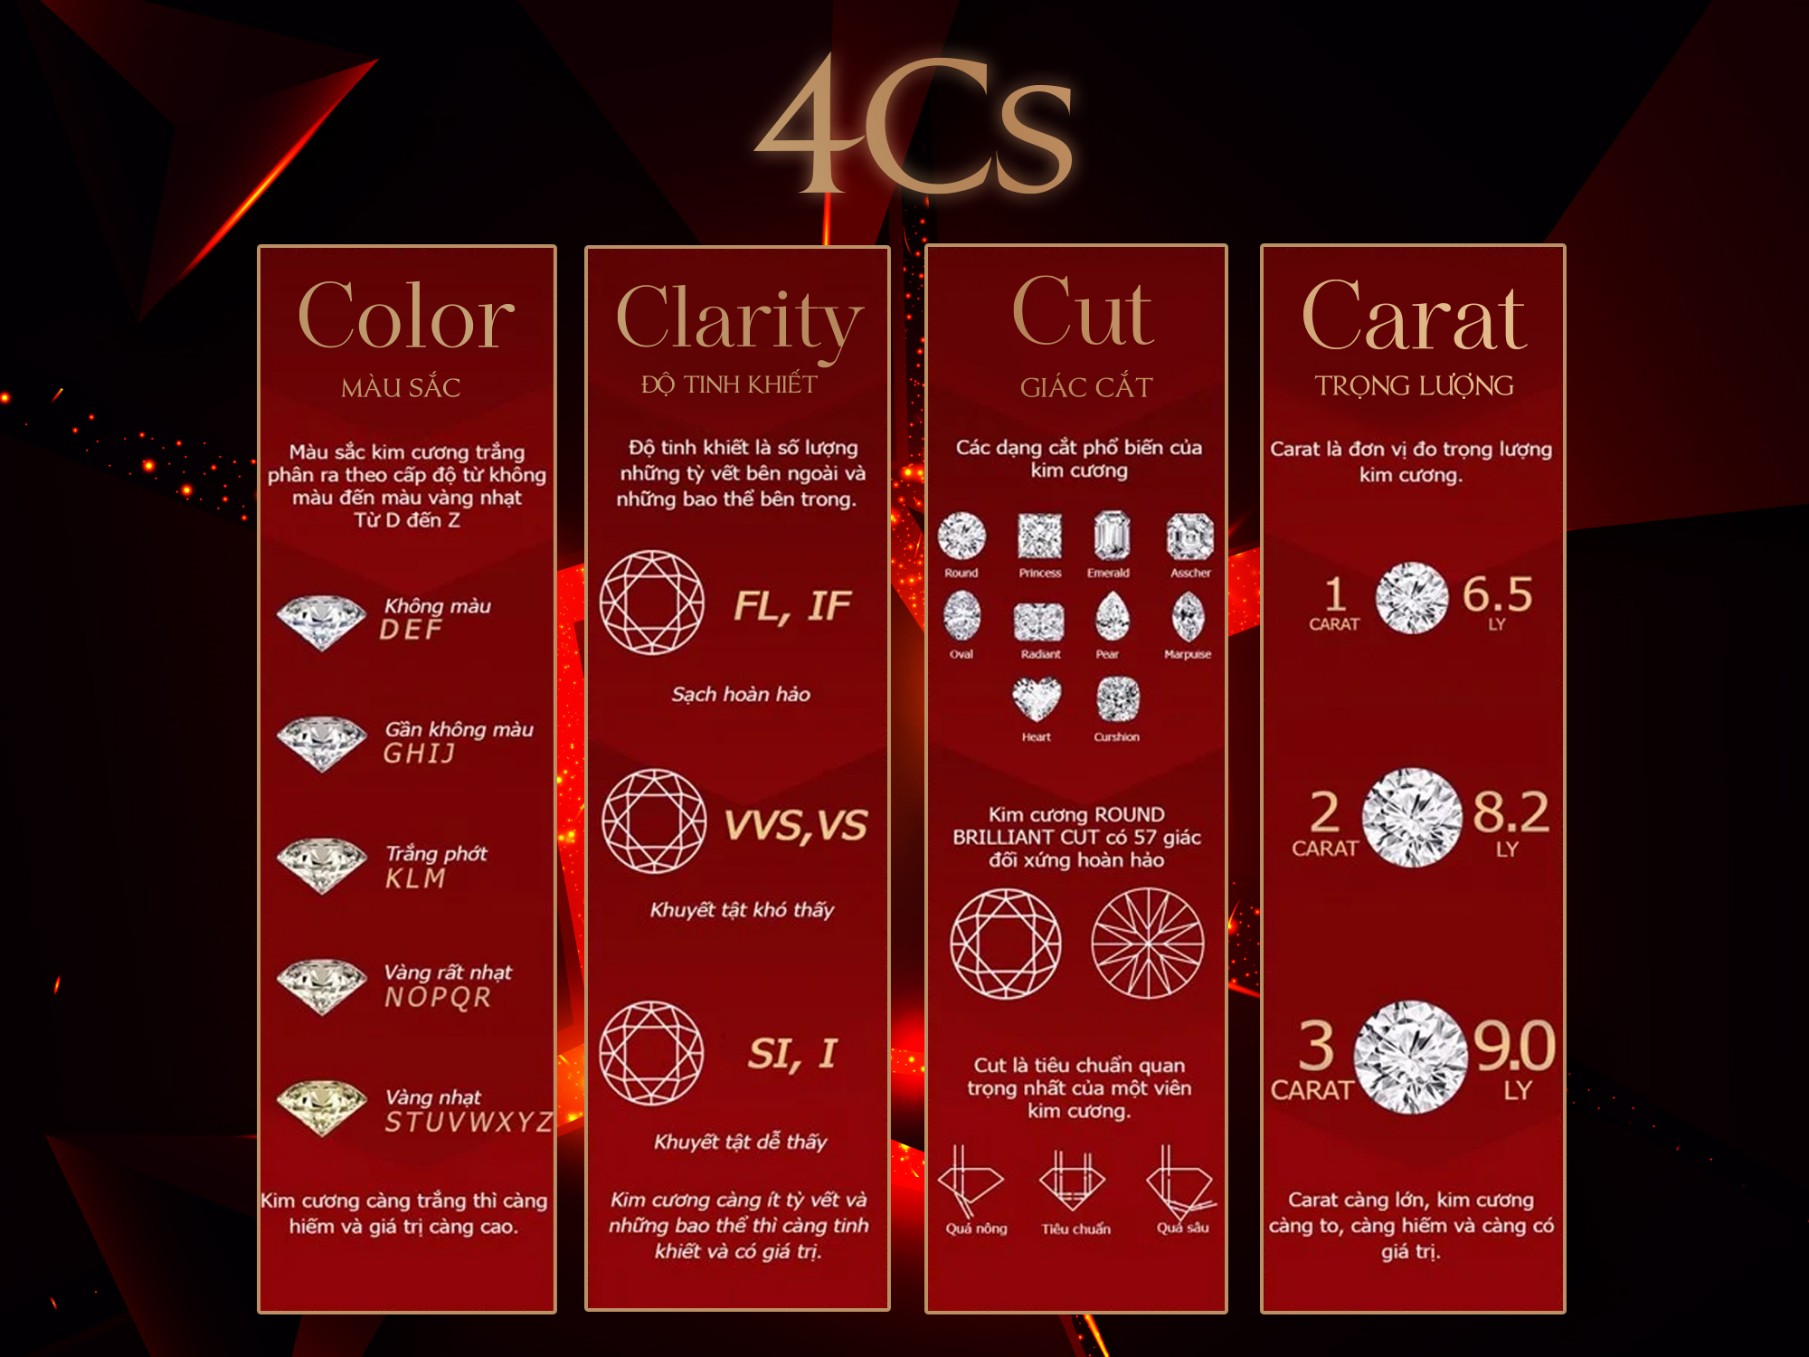 Tiêu chuẩn 4C khi đánh giá chất lượng kim cương